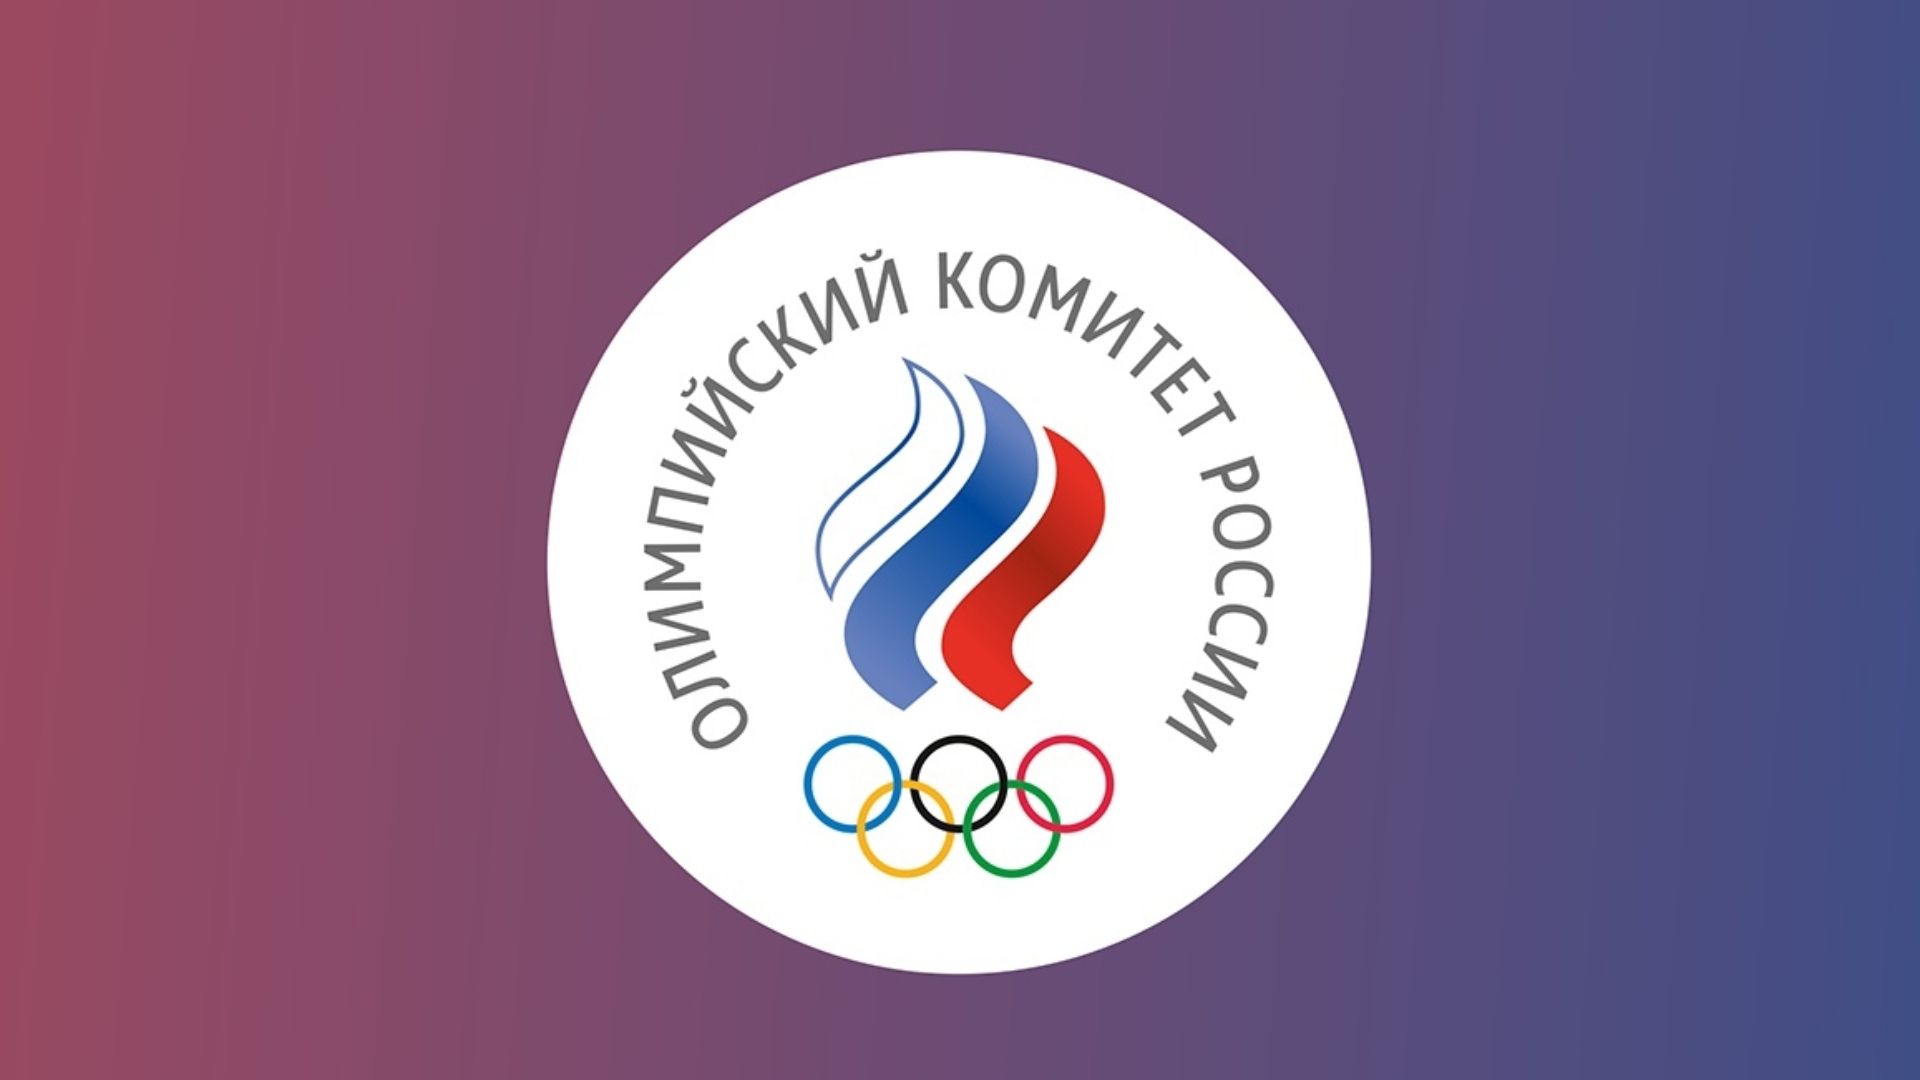 El Comité Olímpico Ruso asegura que las medidas del COI son discriminatorias. Foto: Comité Olímpico de Rusia